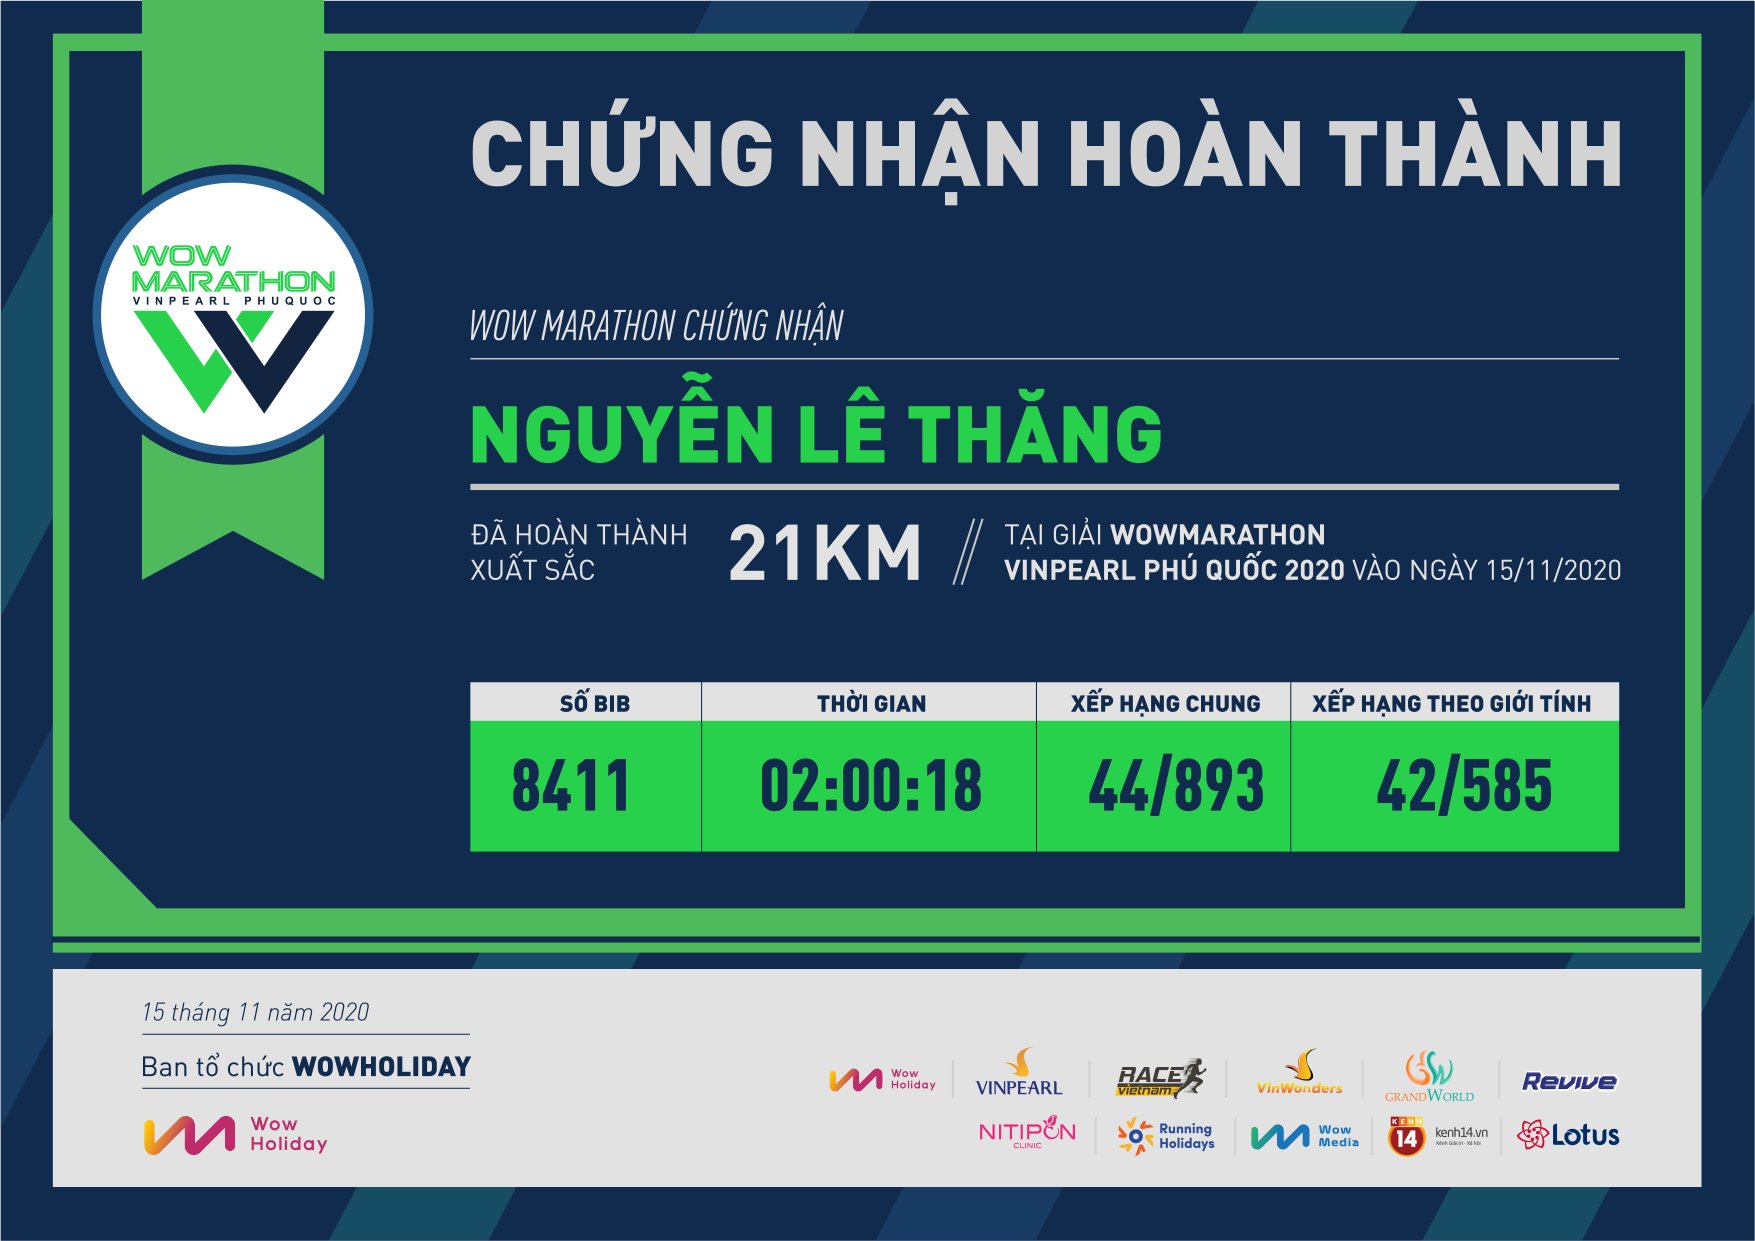 8411 - Nguyễn Lê Thăng